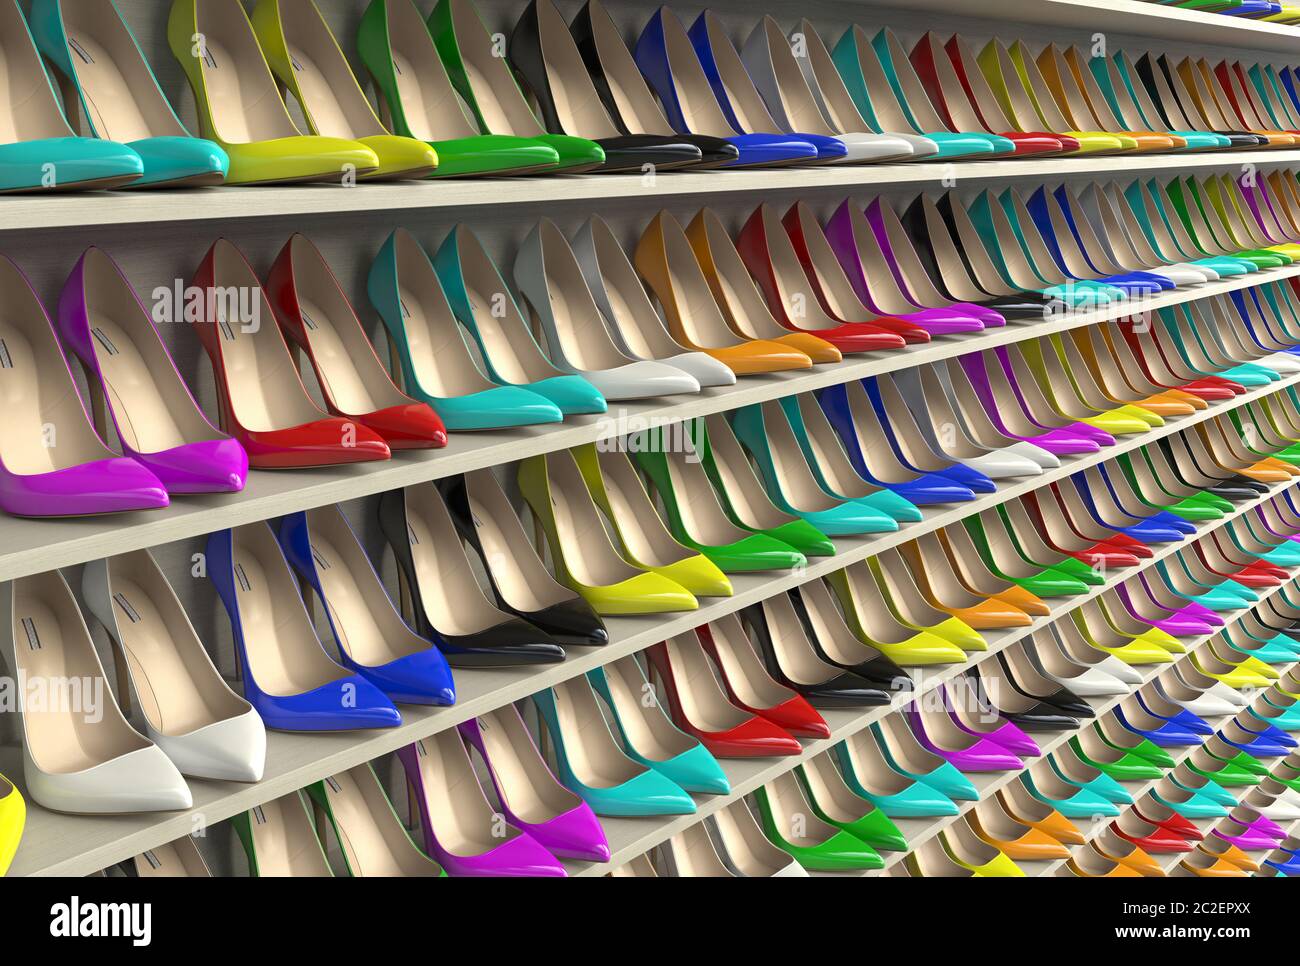 Viele bunte helle Frauen hoch-abgehälte Schuhe mit einem spitzen Zeh stehen  in einer Reihe auf den Regalen. Die große Auswahl an bunten Pumps Schuhe in  einem c Stockfotografie - Alamy